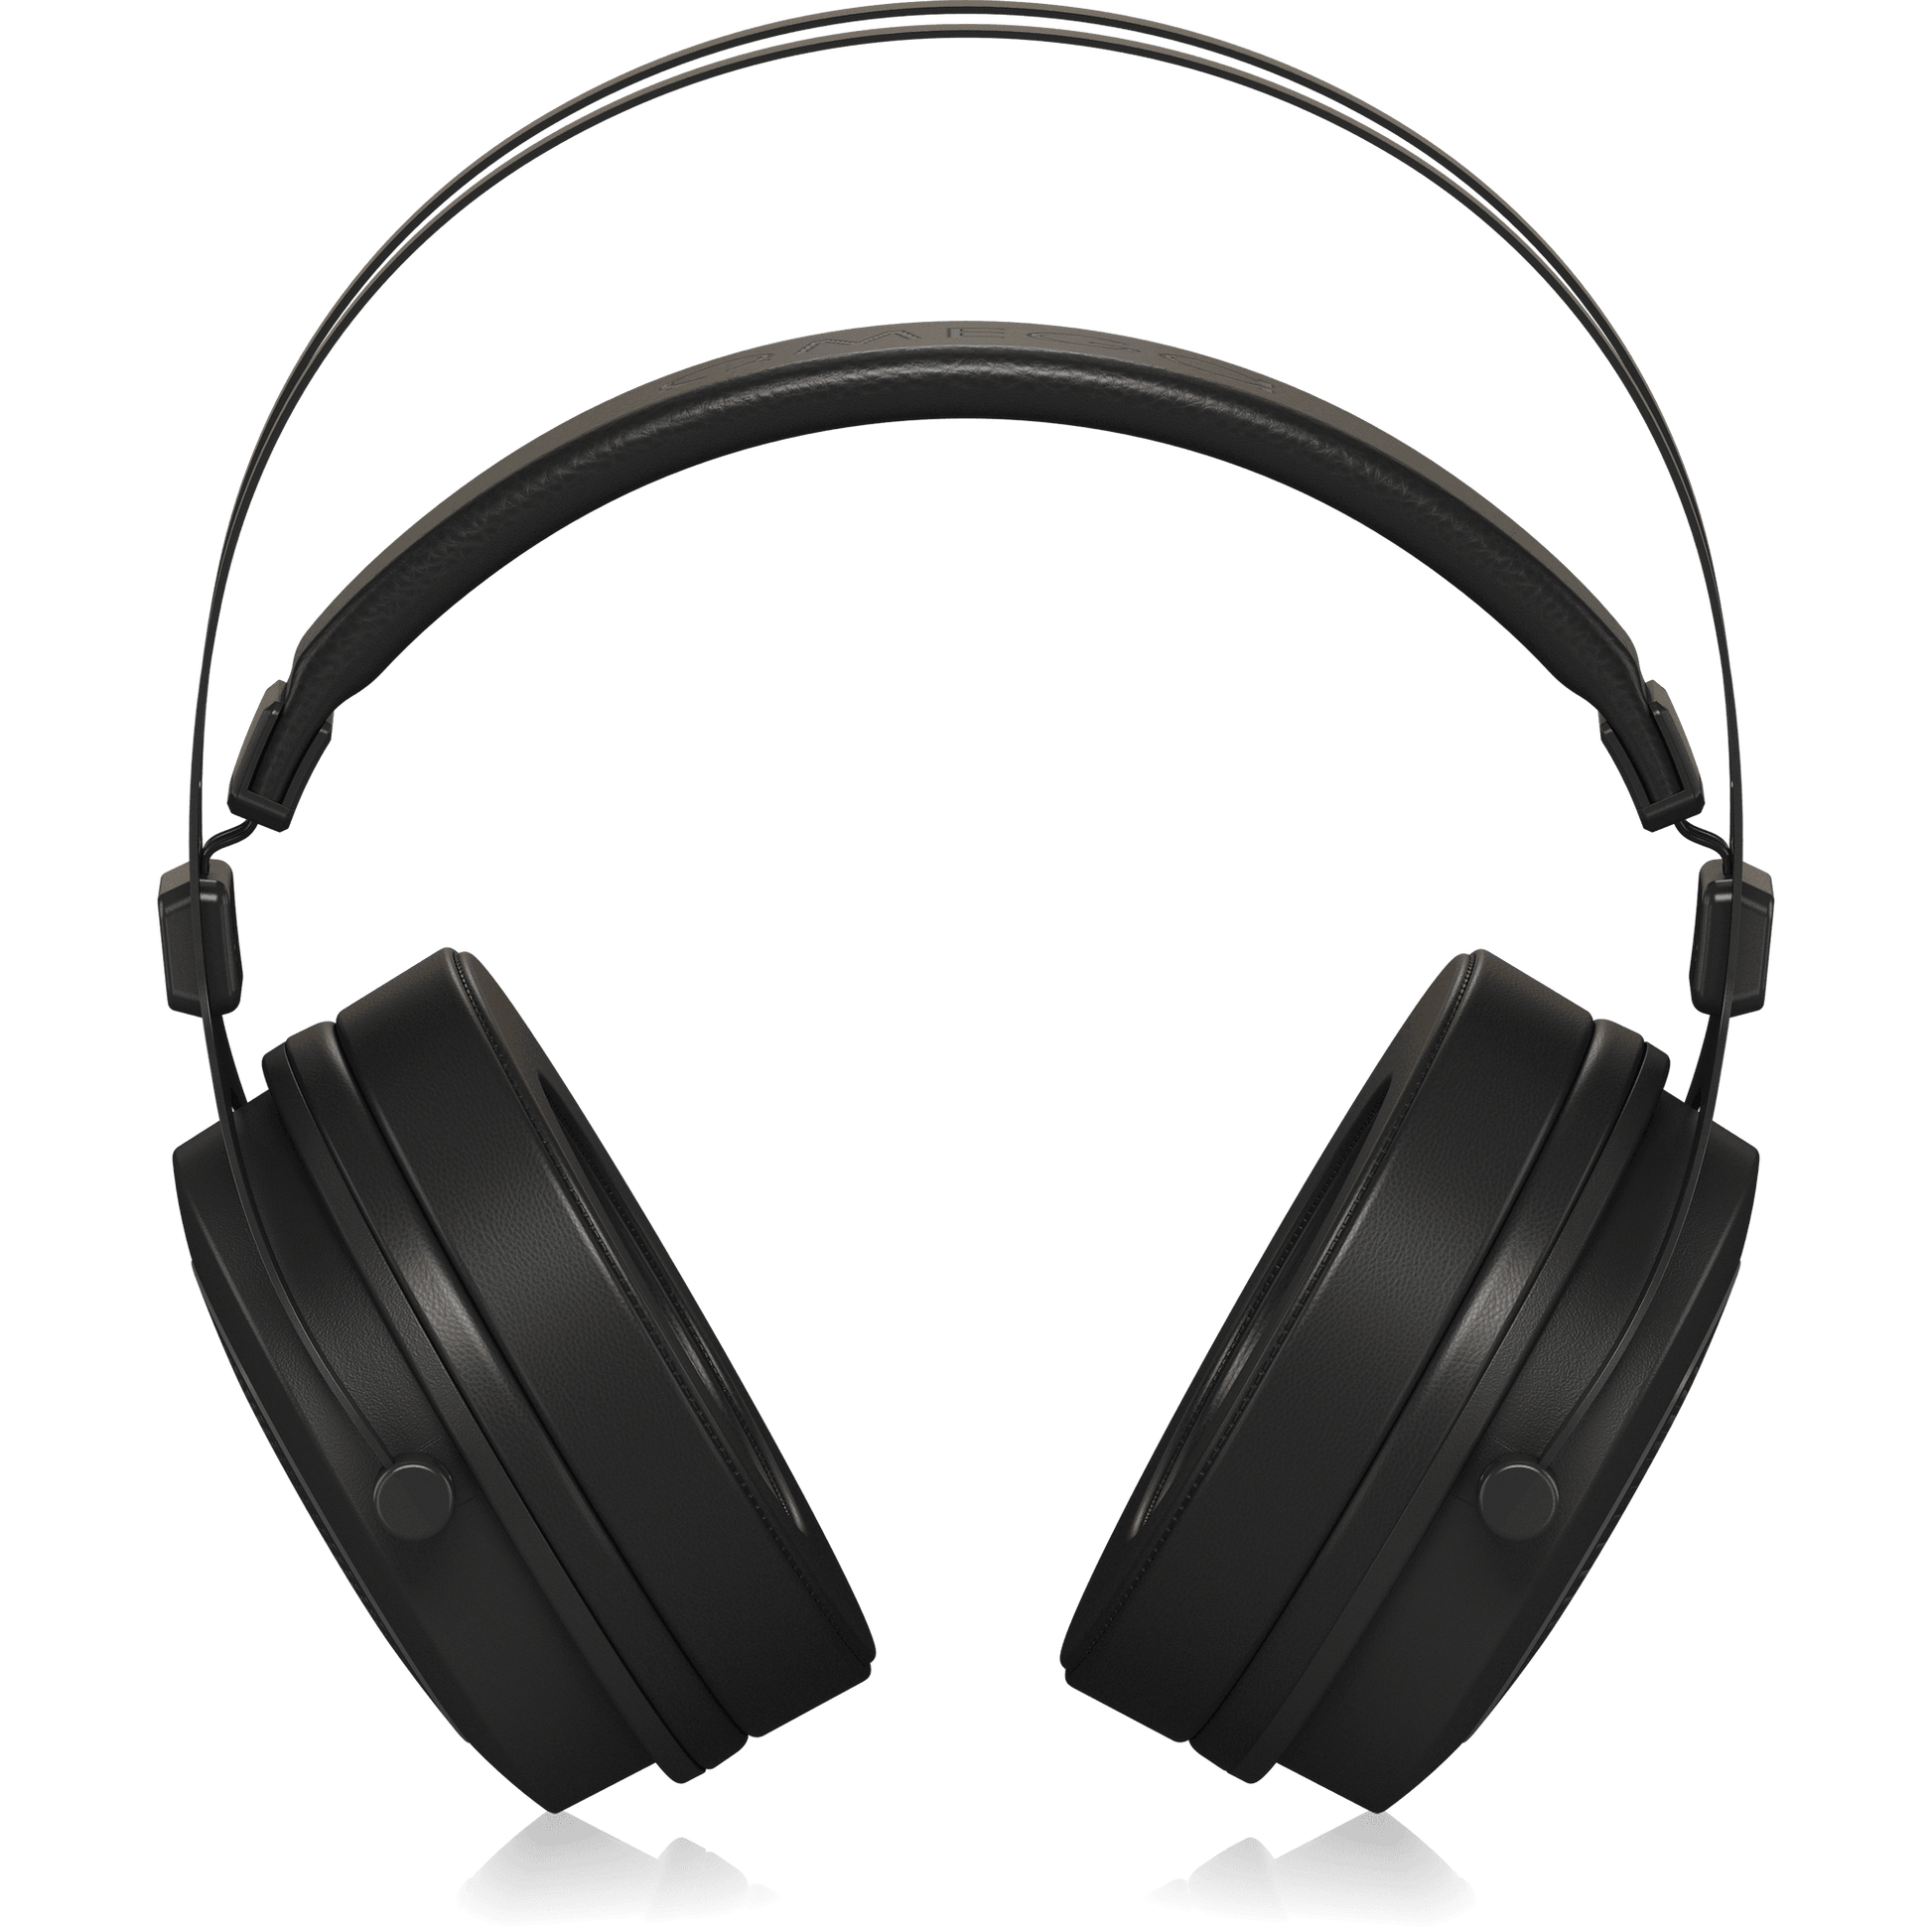 Behringer OMEGA Headphones Retro-Style Open-Back High-Fidelity